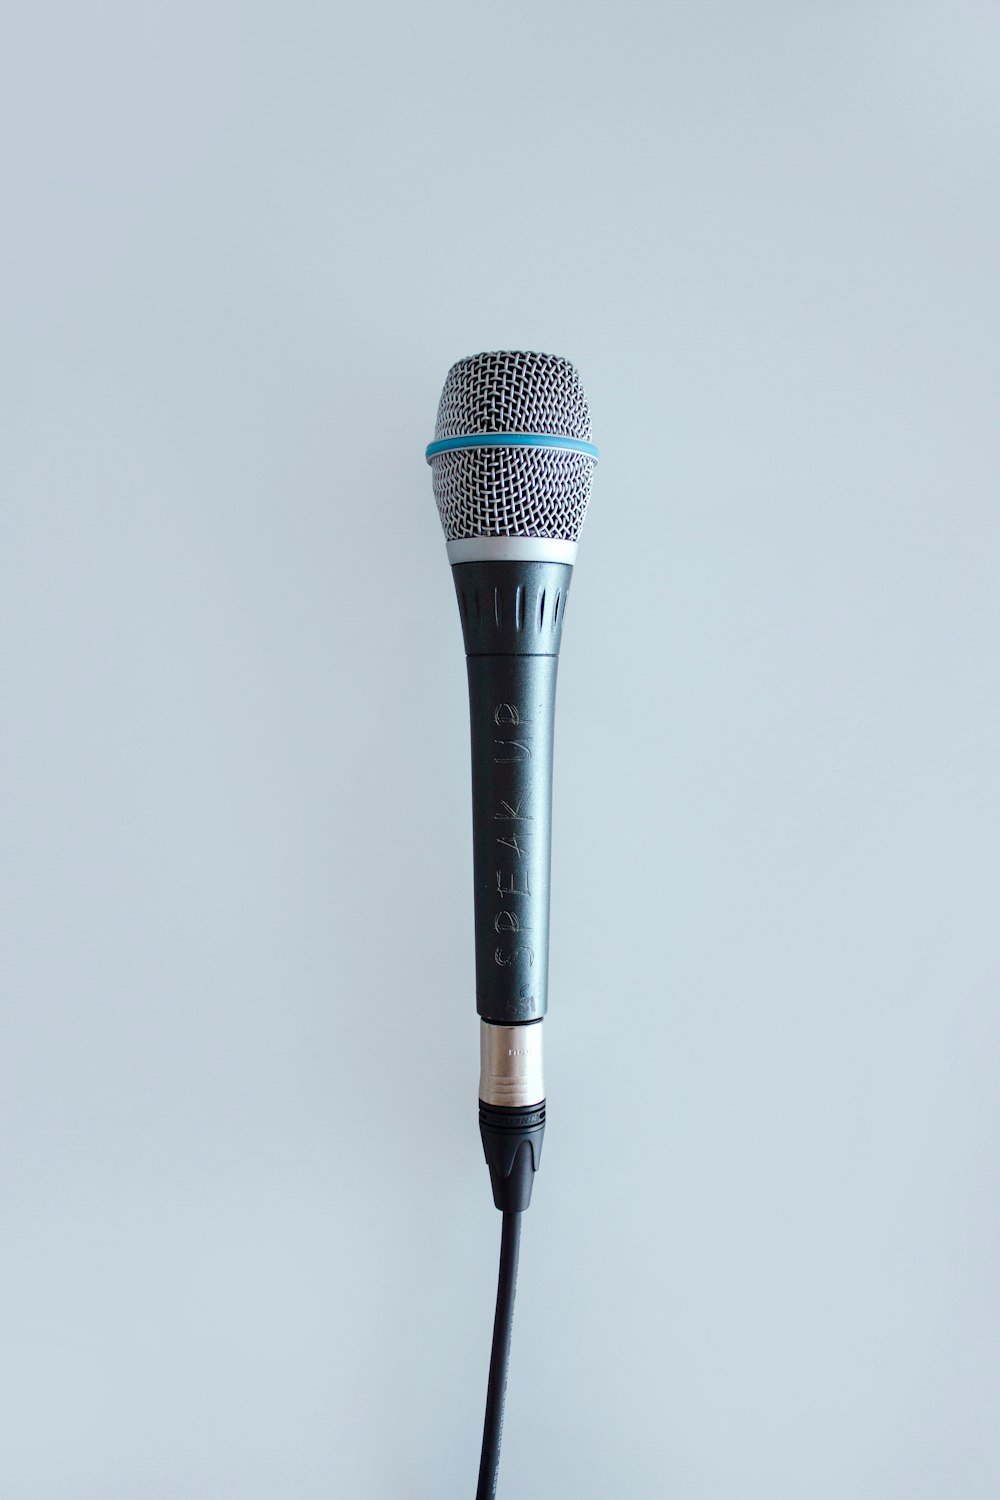 Microfone com fio preto e cinza